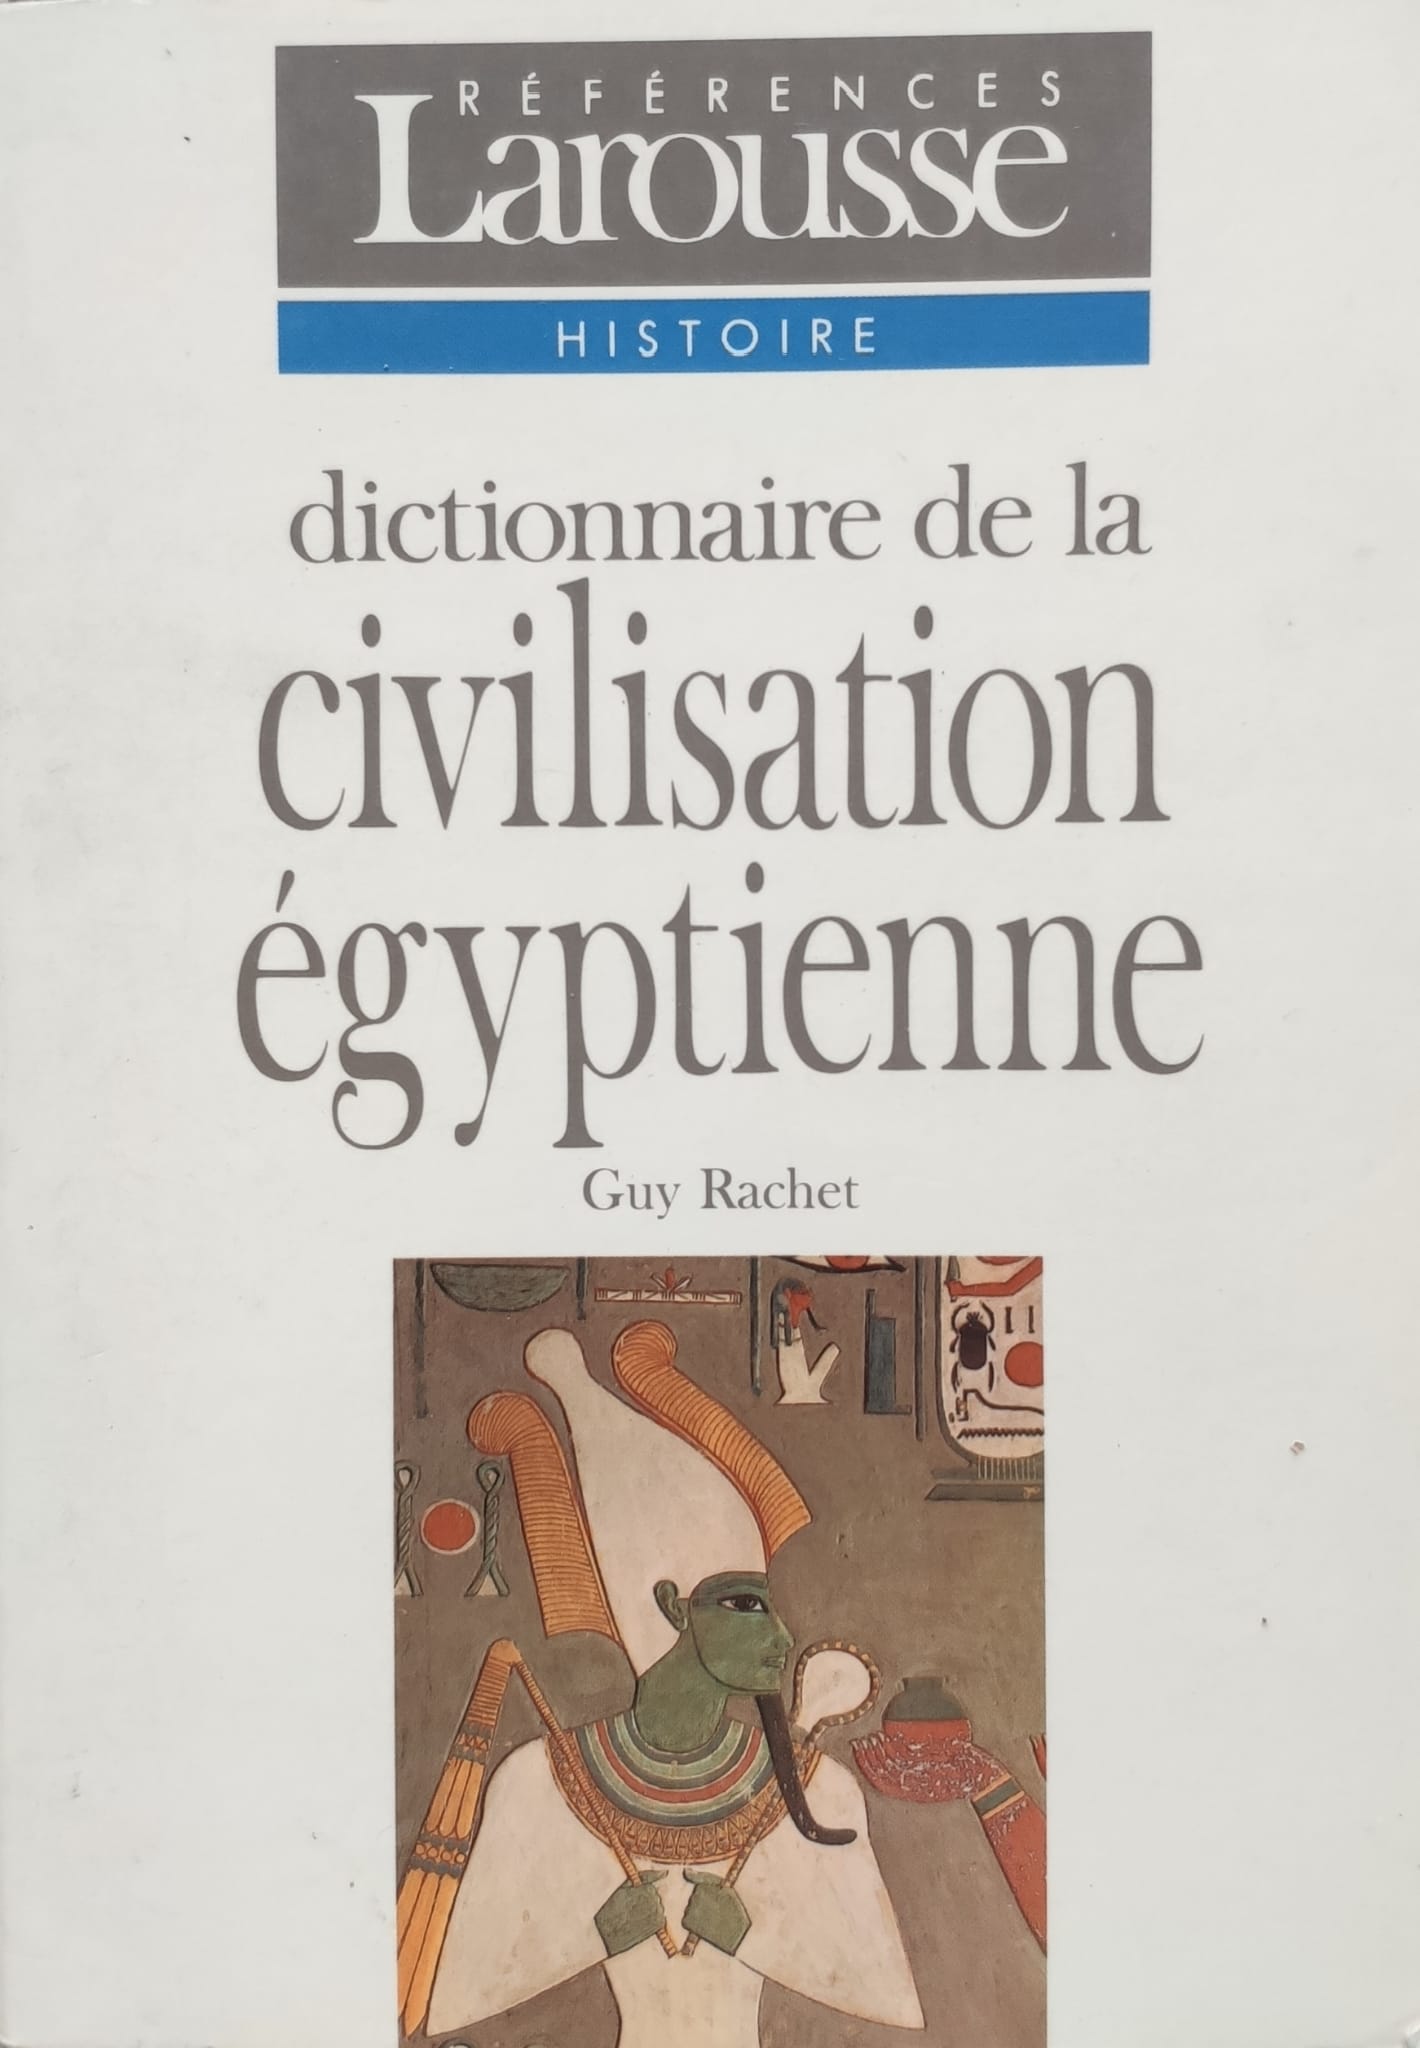 dictionnaire de la civilisation egyptienne                                                           guy rachet                                                                                          